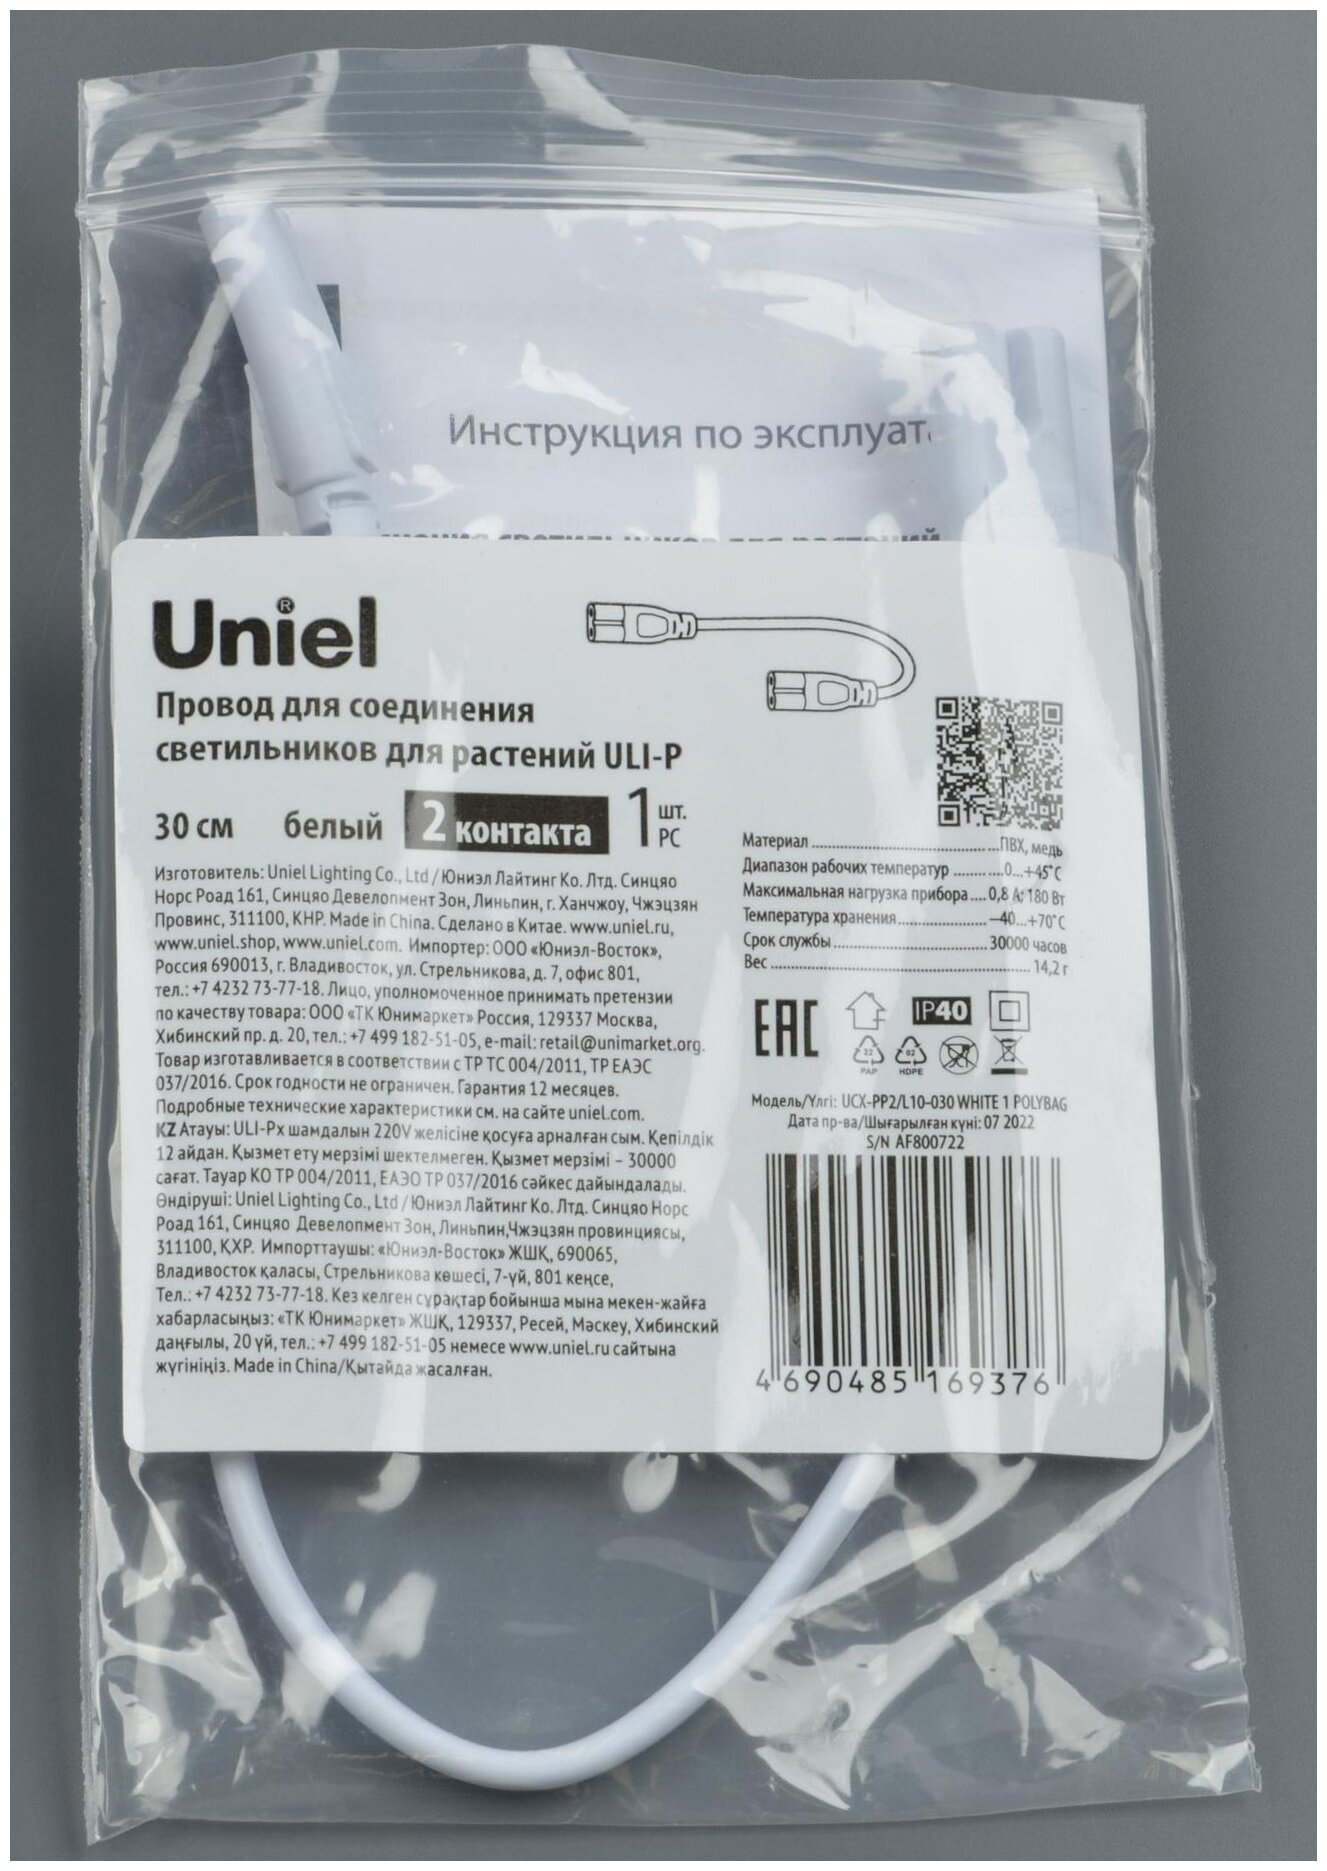 Uniel Провод для соединения светильников для растений ULI-P Uniel, 30 см, 2 контакта, белый